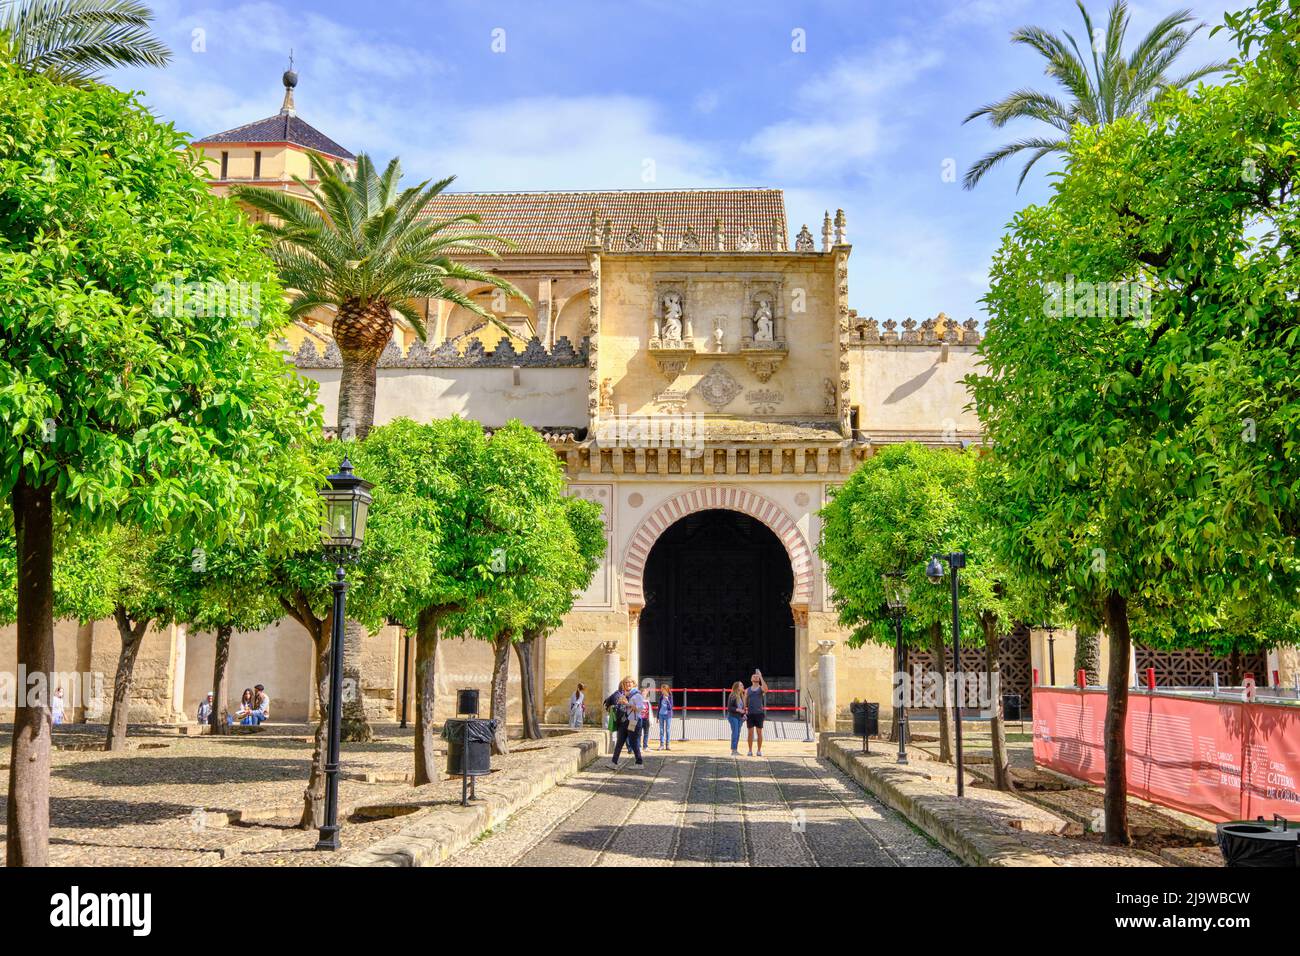 Mezquita-Catedral (Moschea-Cattedrale) di Cordoba, un sito patrimonio dell'umanità dell'UNESCO. Patio de los Naranjos. Andalucia, Spagna Foto Stock